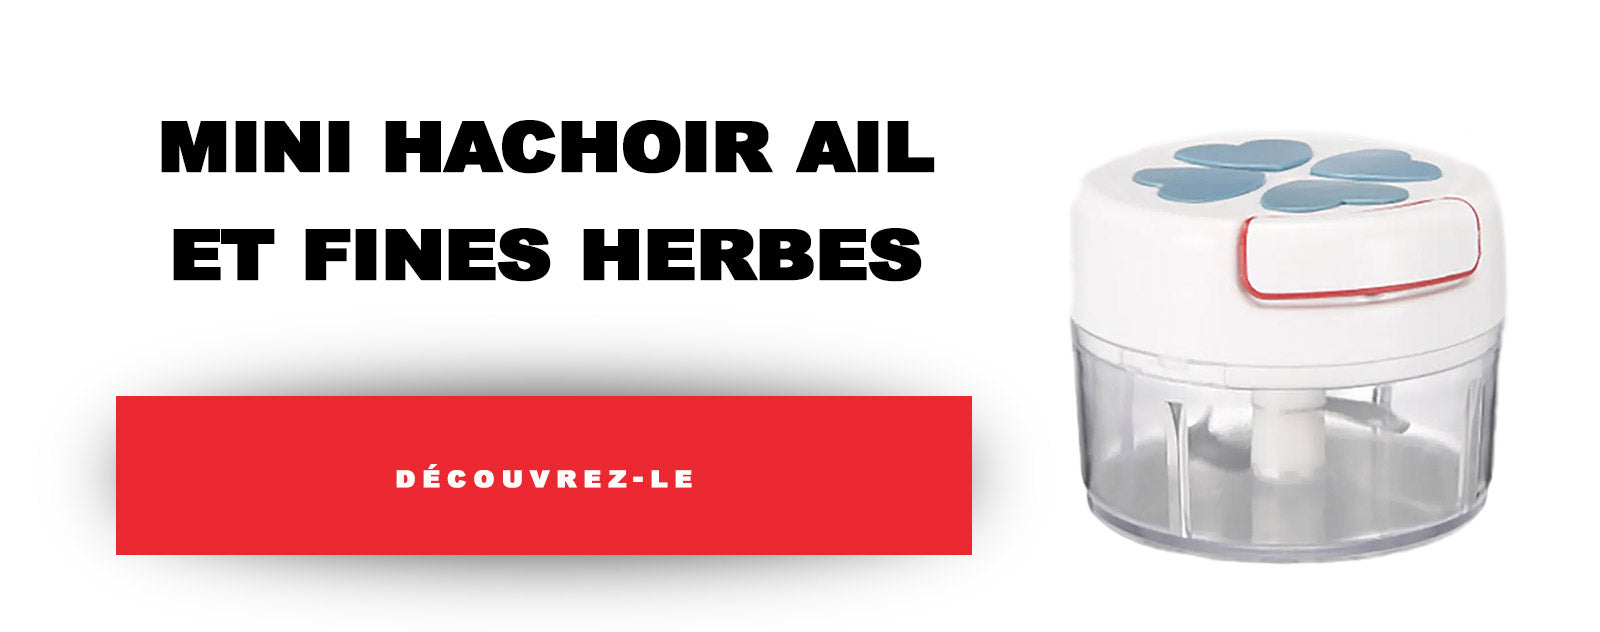 Mini Hachoir Ail et Fines Herbes